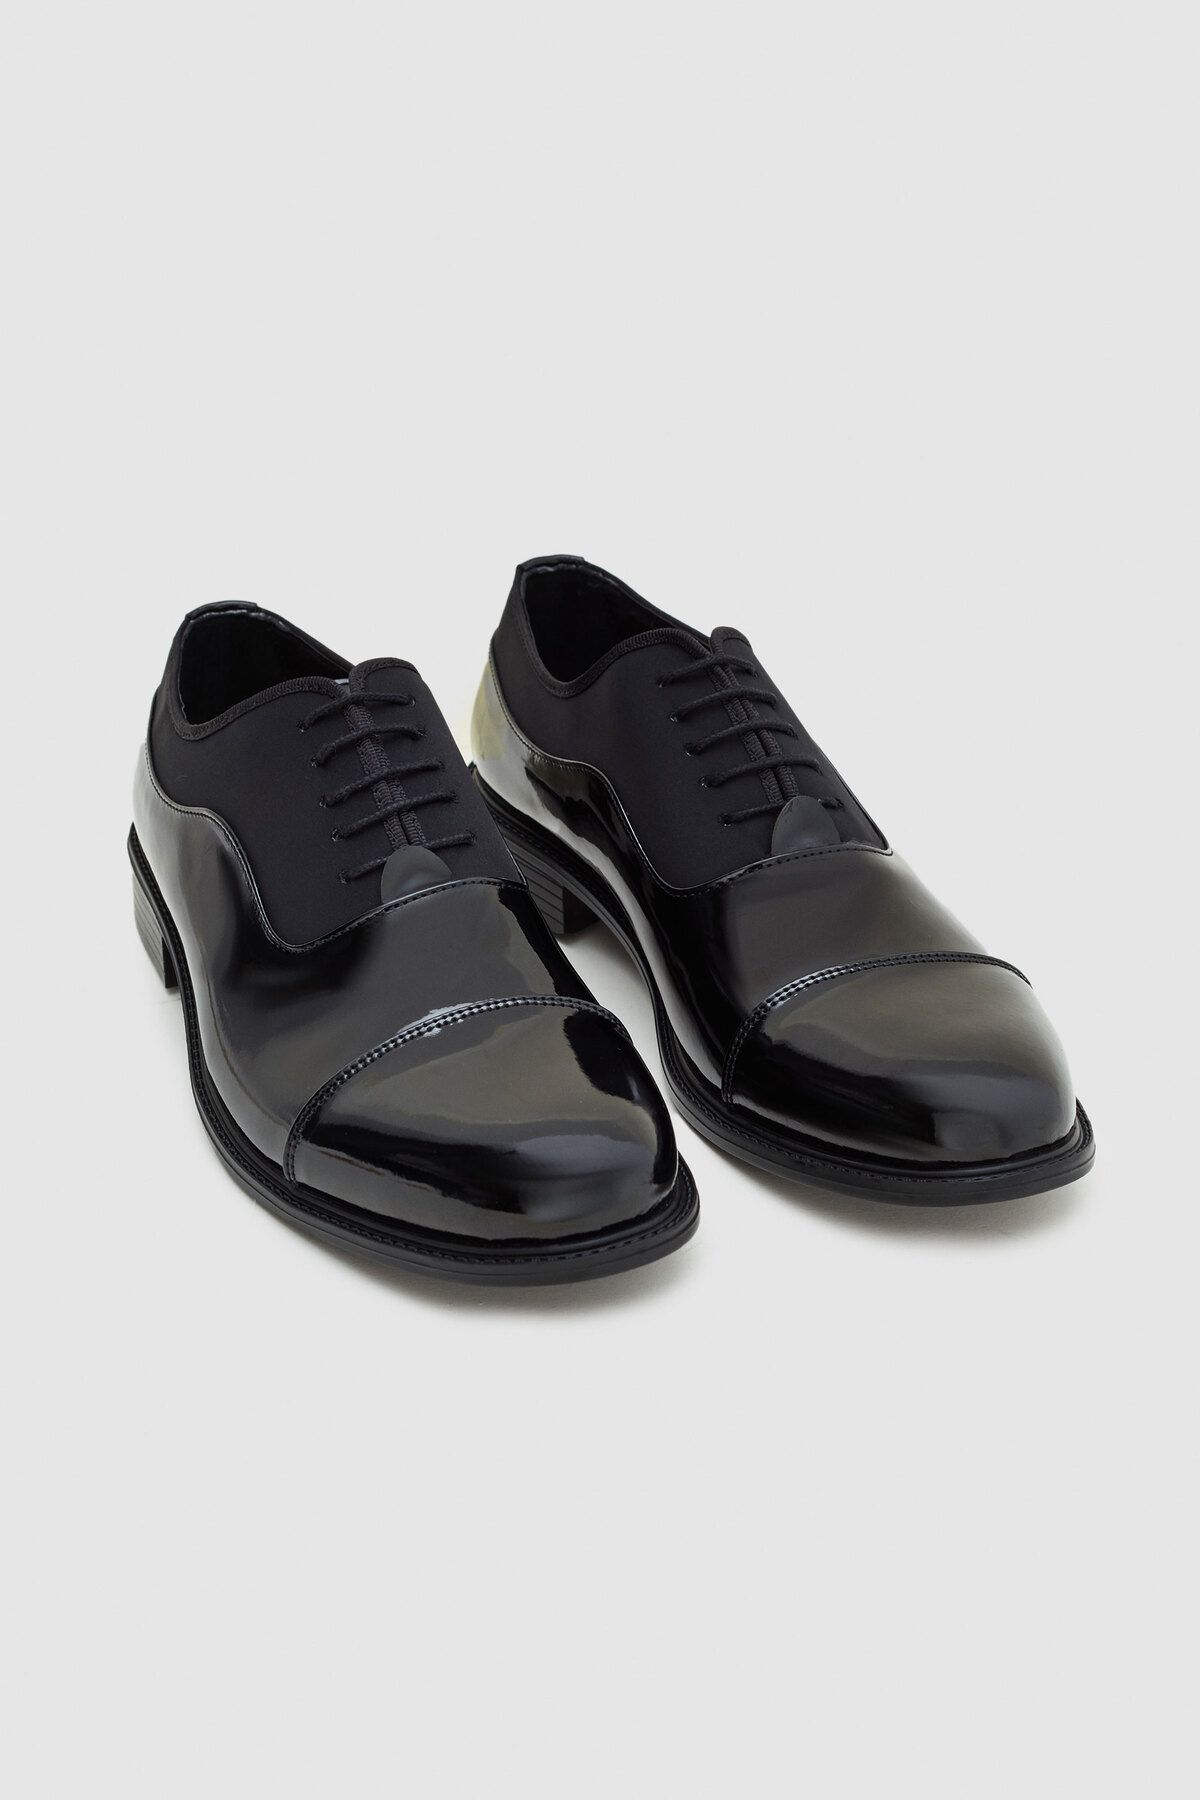 D'S Damat Ds Damat Siyah Klasik Smokin Ayakkabı